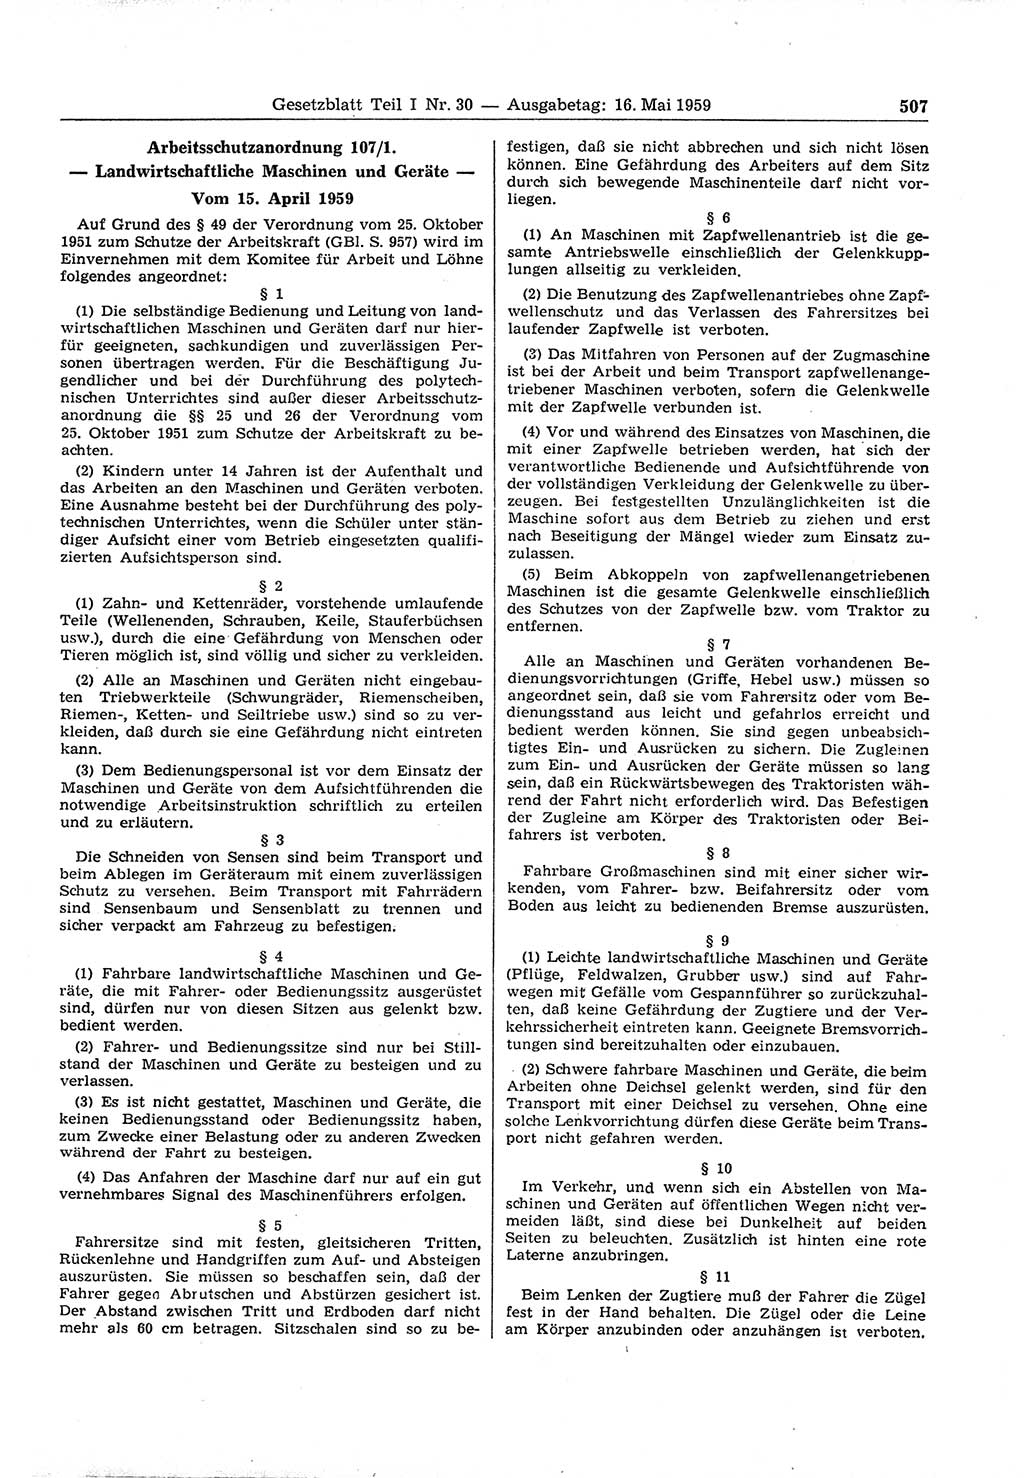 Gesetzblatt (GBl.) der Deutschen Demokratischen Republik (DDR) Teil Ⅰ 1959, Seite 507 (GBl. DDR Ⅰ 1959, S. 507)